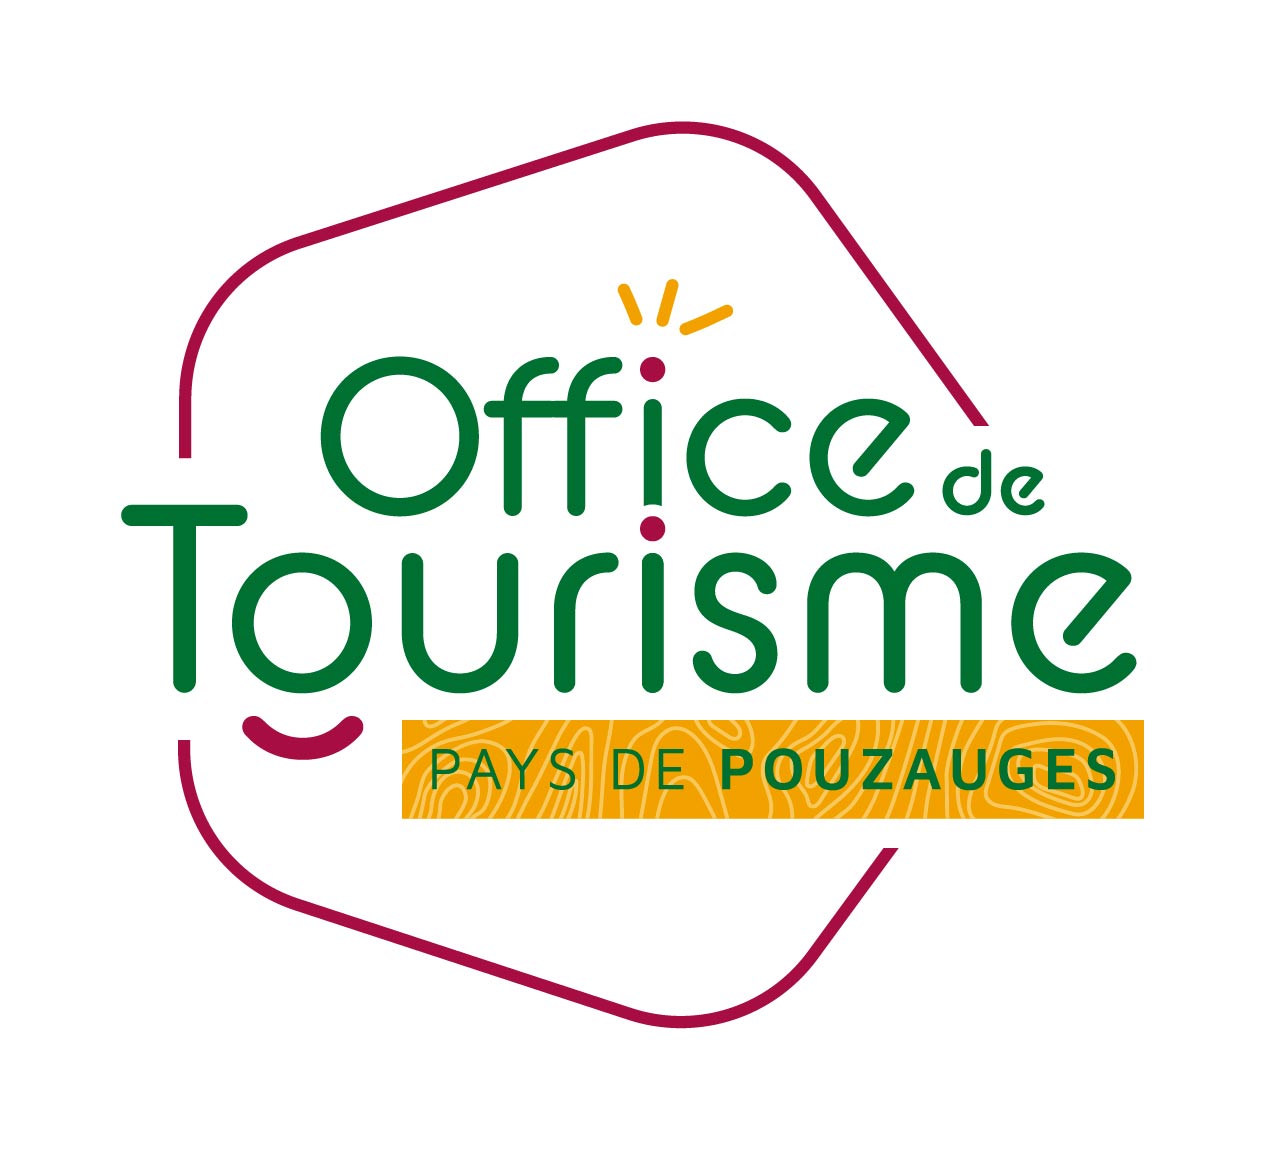 Pays de Pouzauges Tourist Office